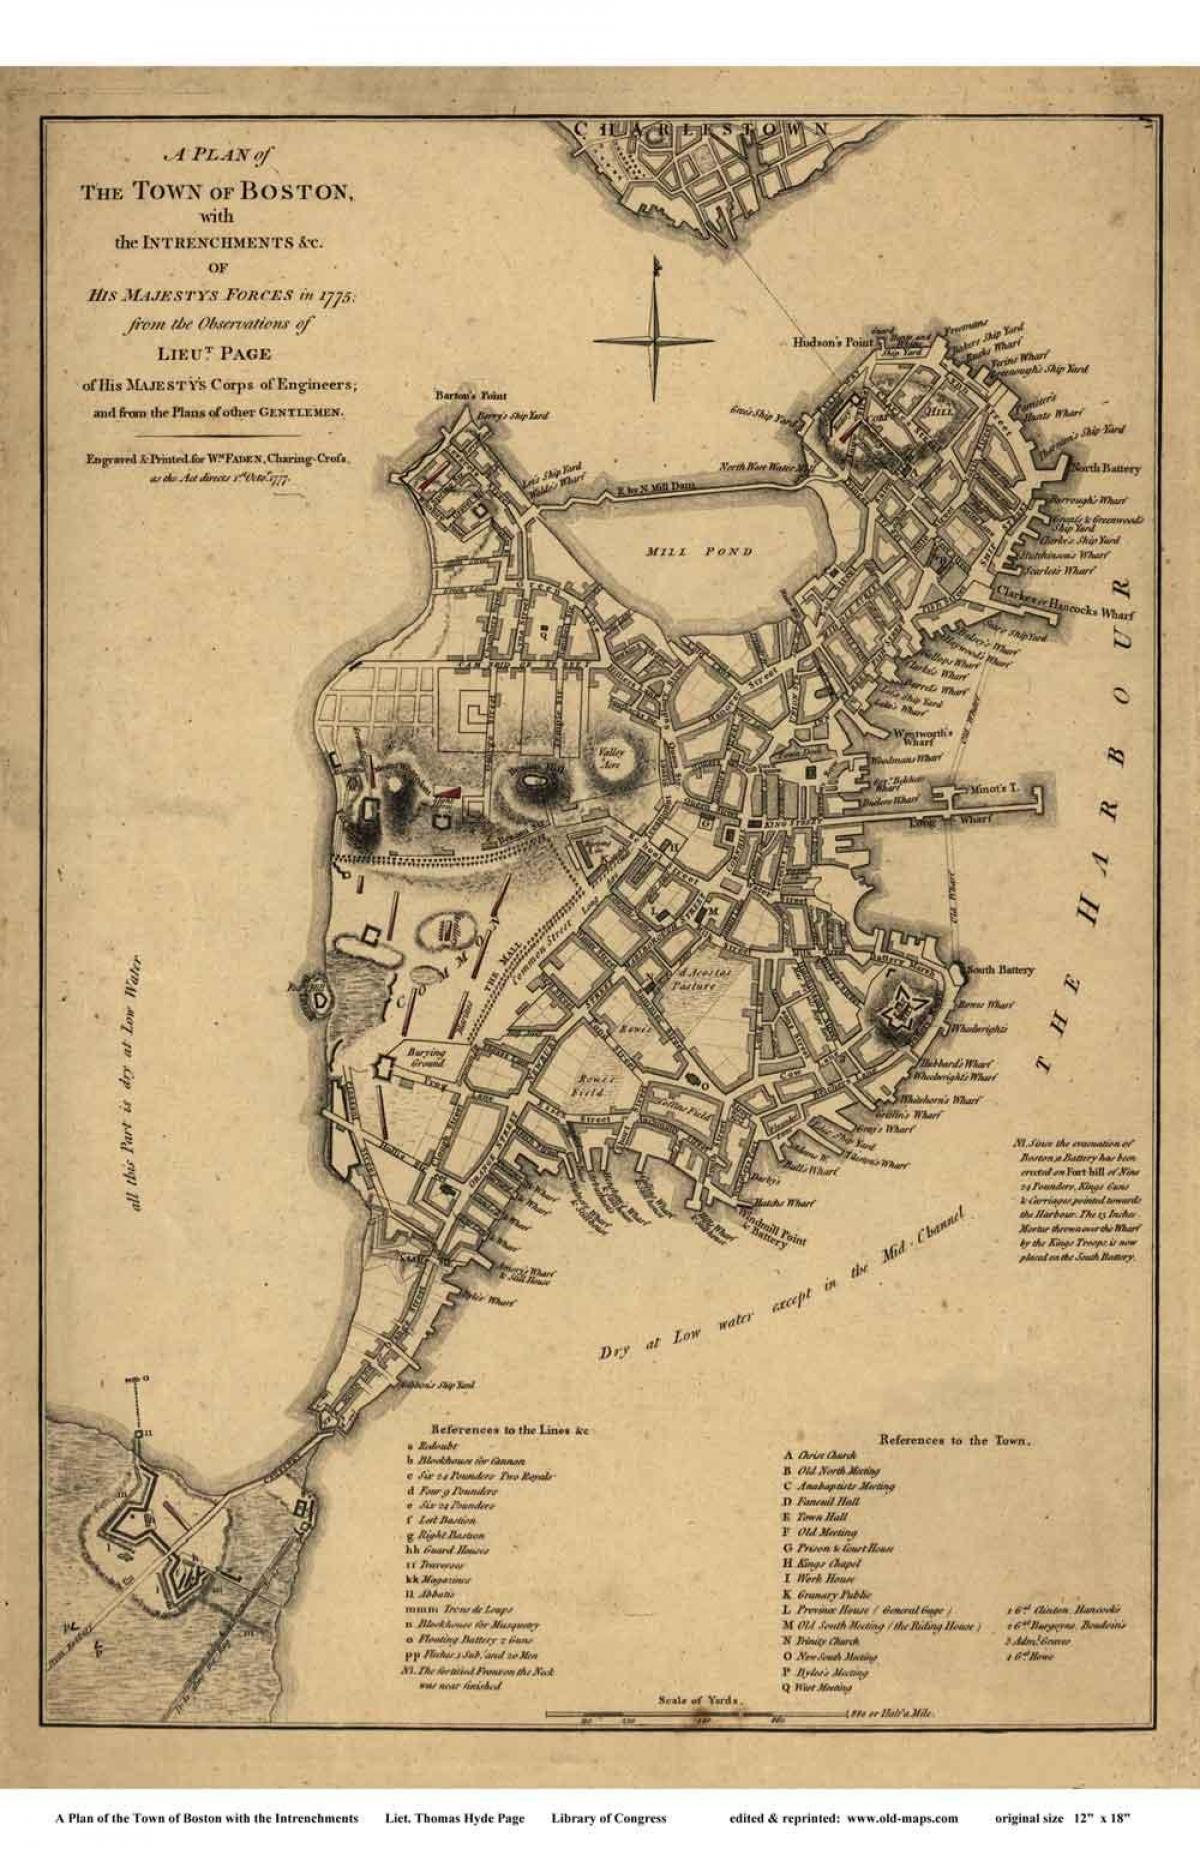 térkép történelmi Bostoni